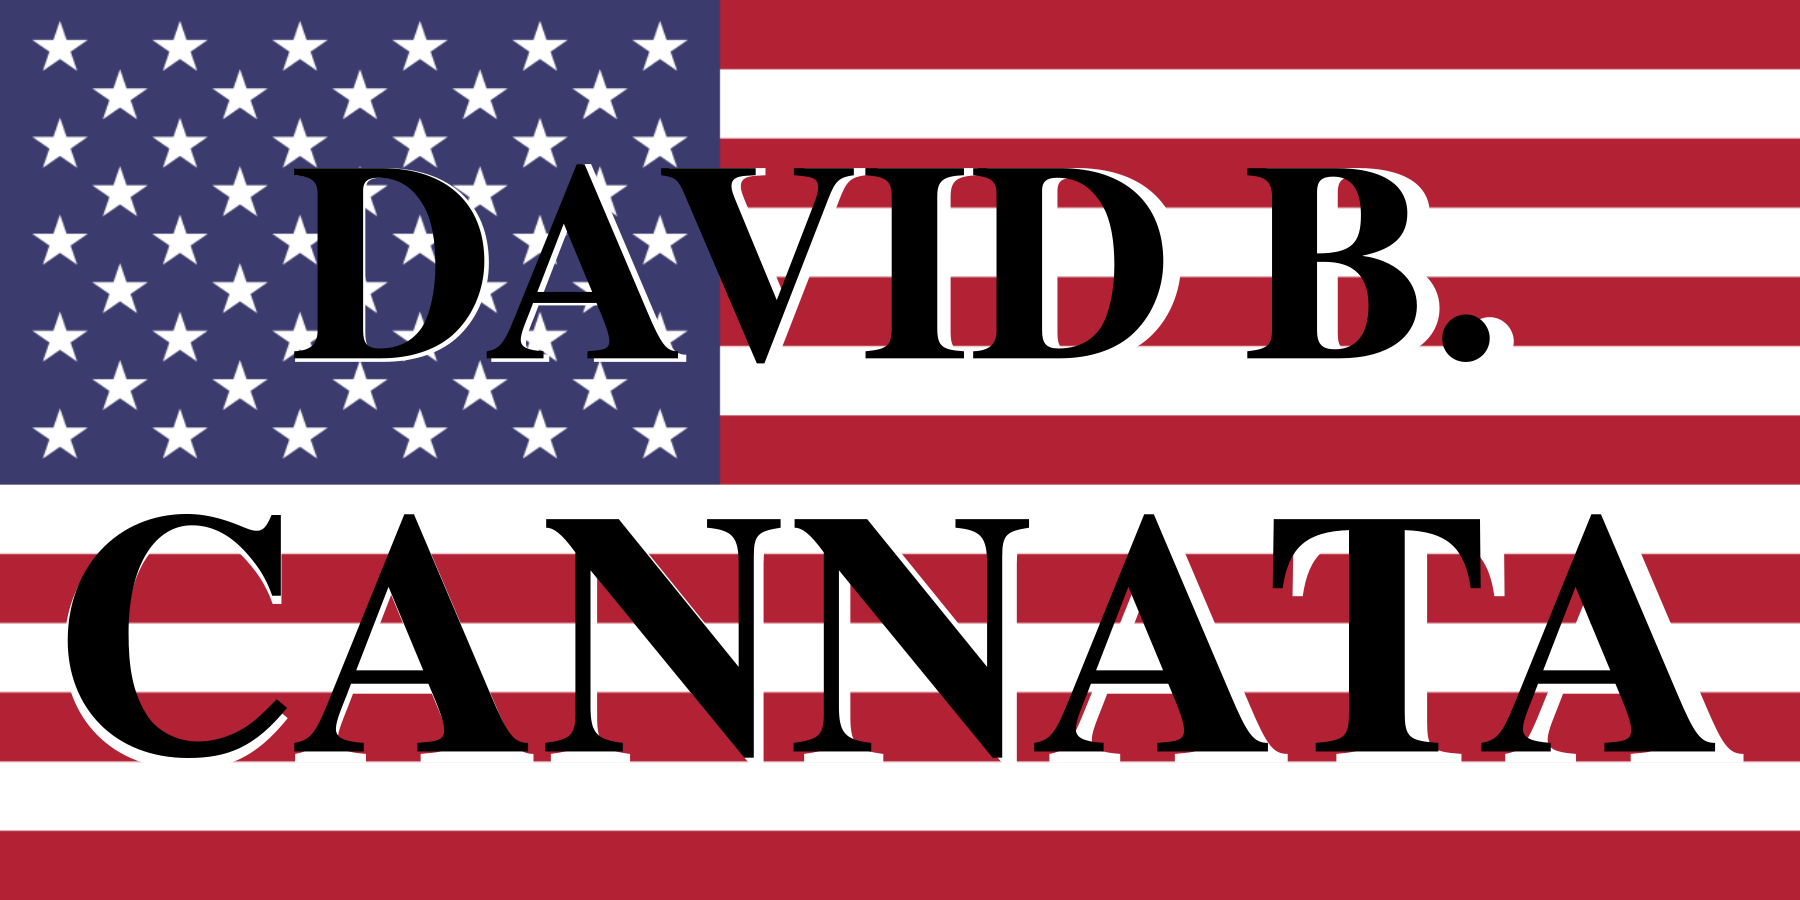 David B. Cannata for Congress